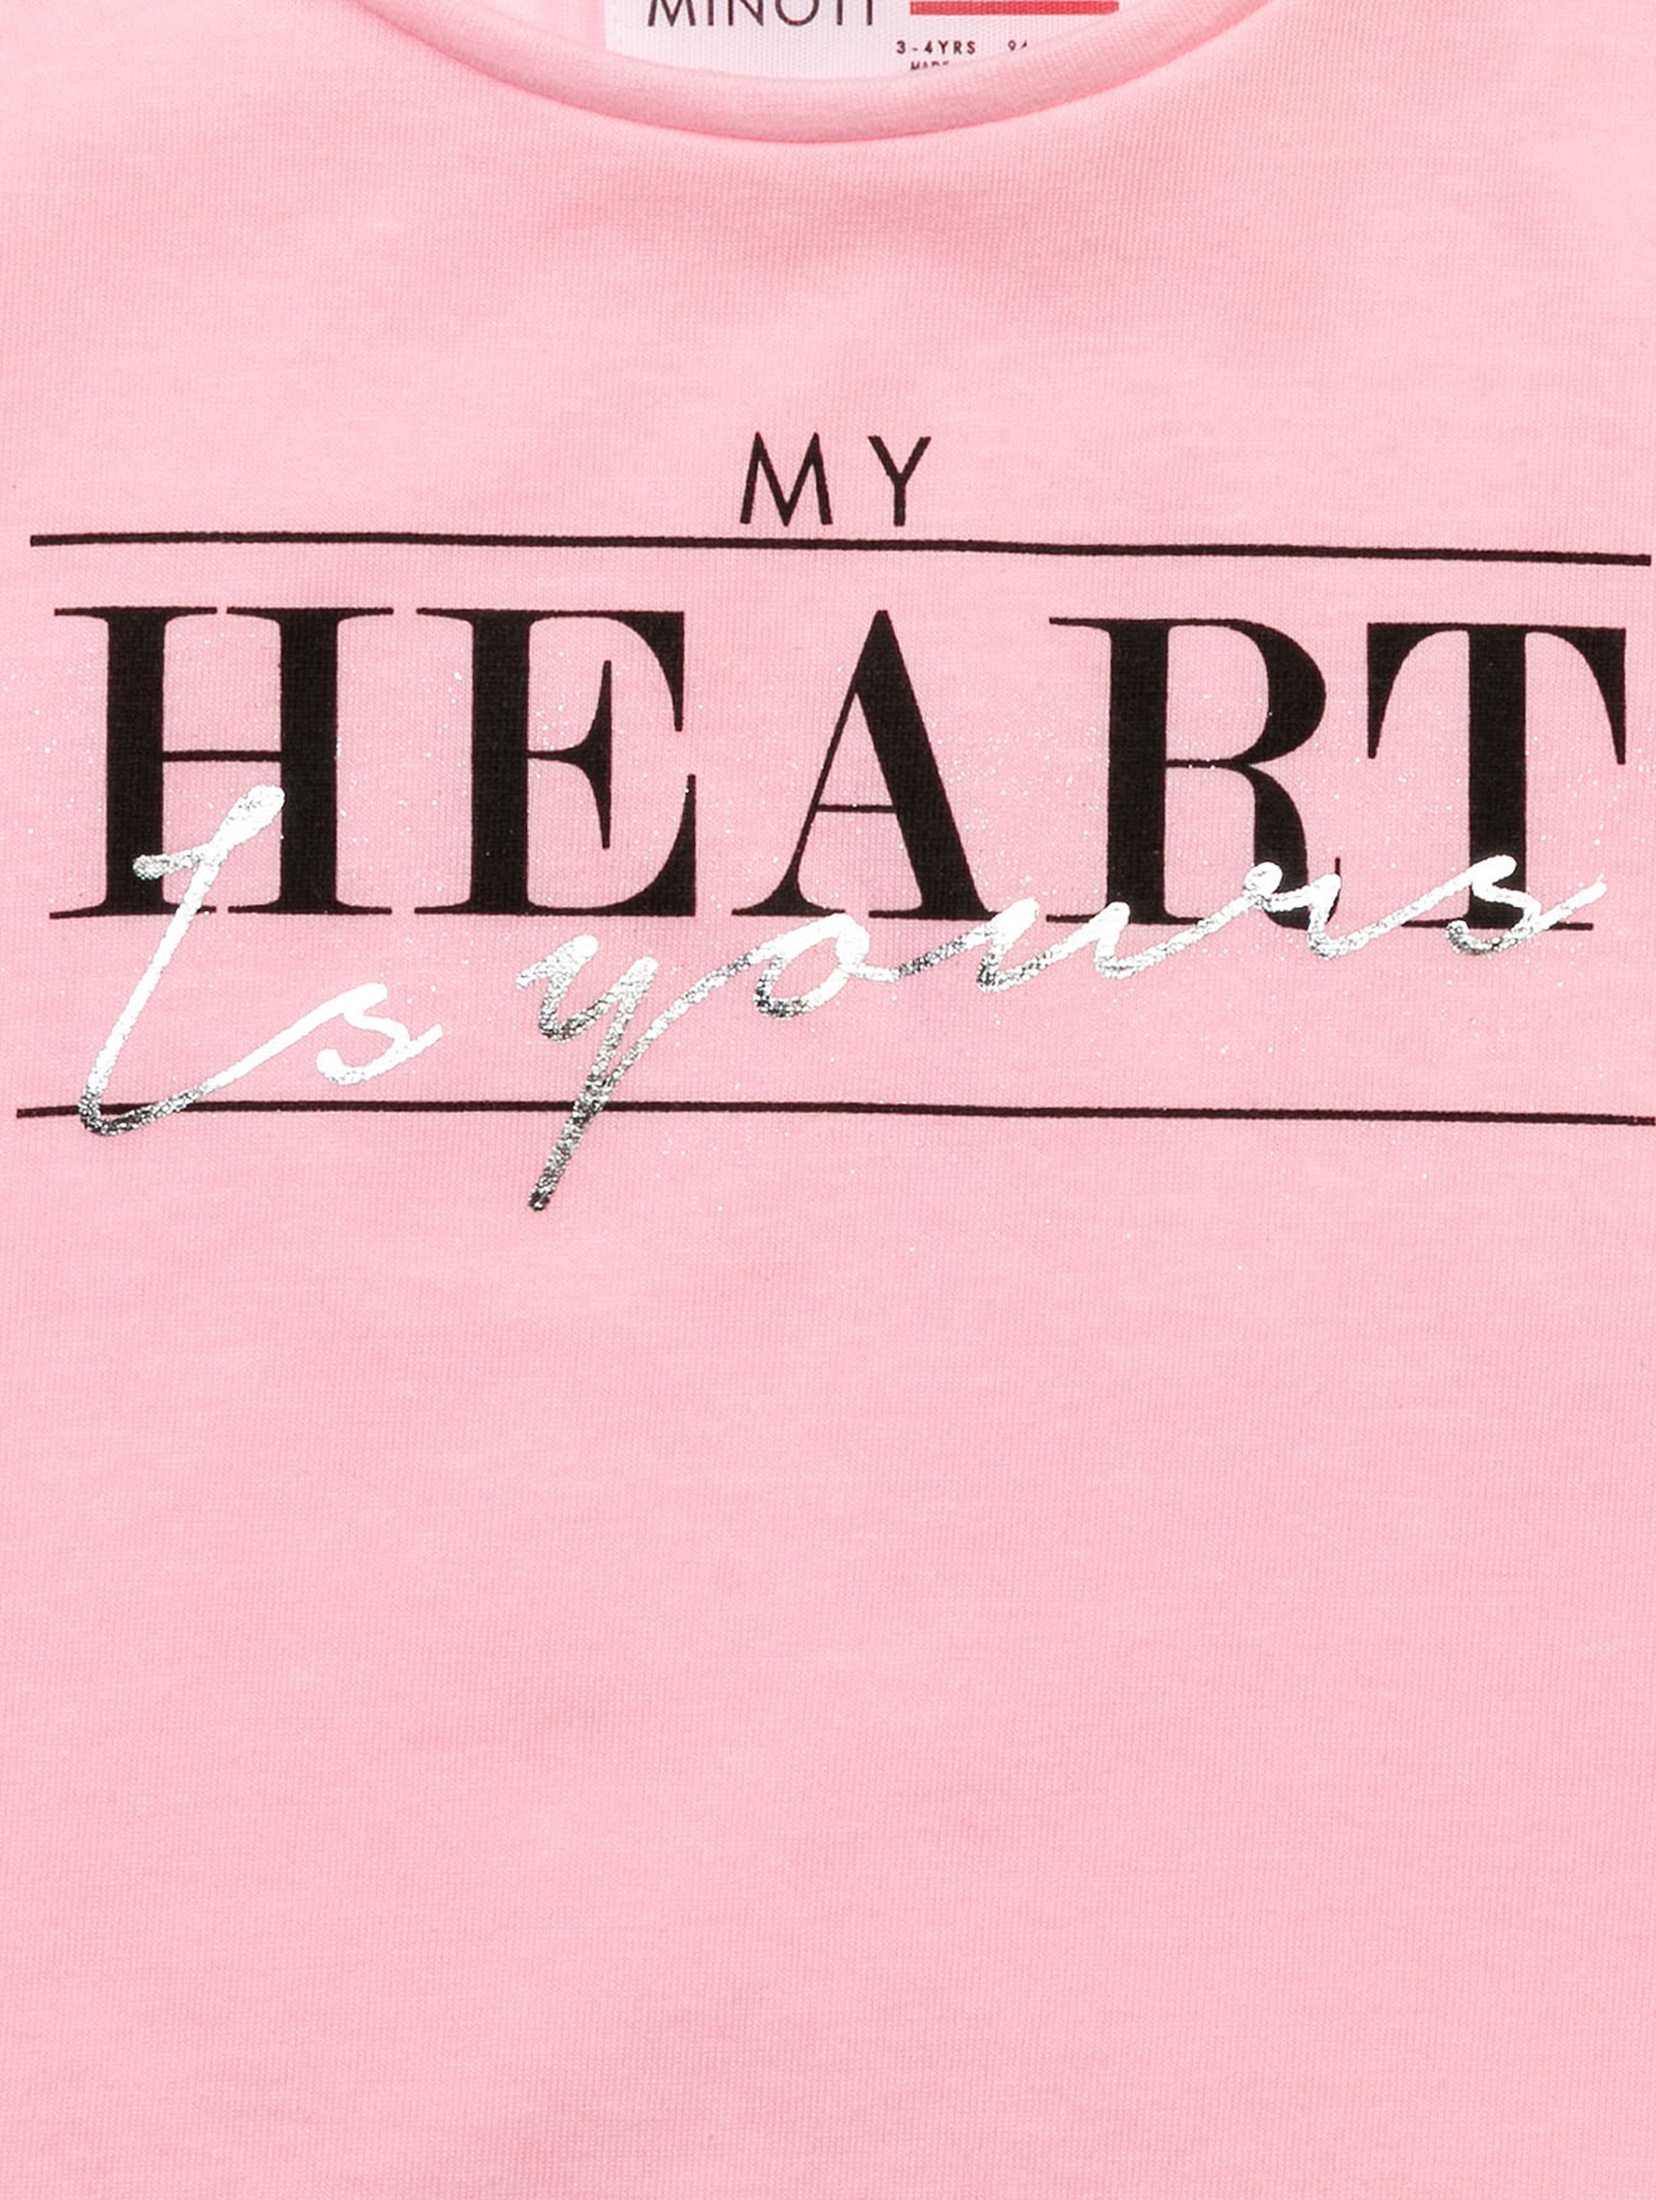 Różowy t-shirt dzianinowy dla dziewczynki z napisem